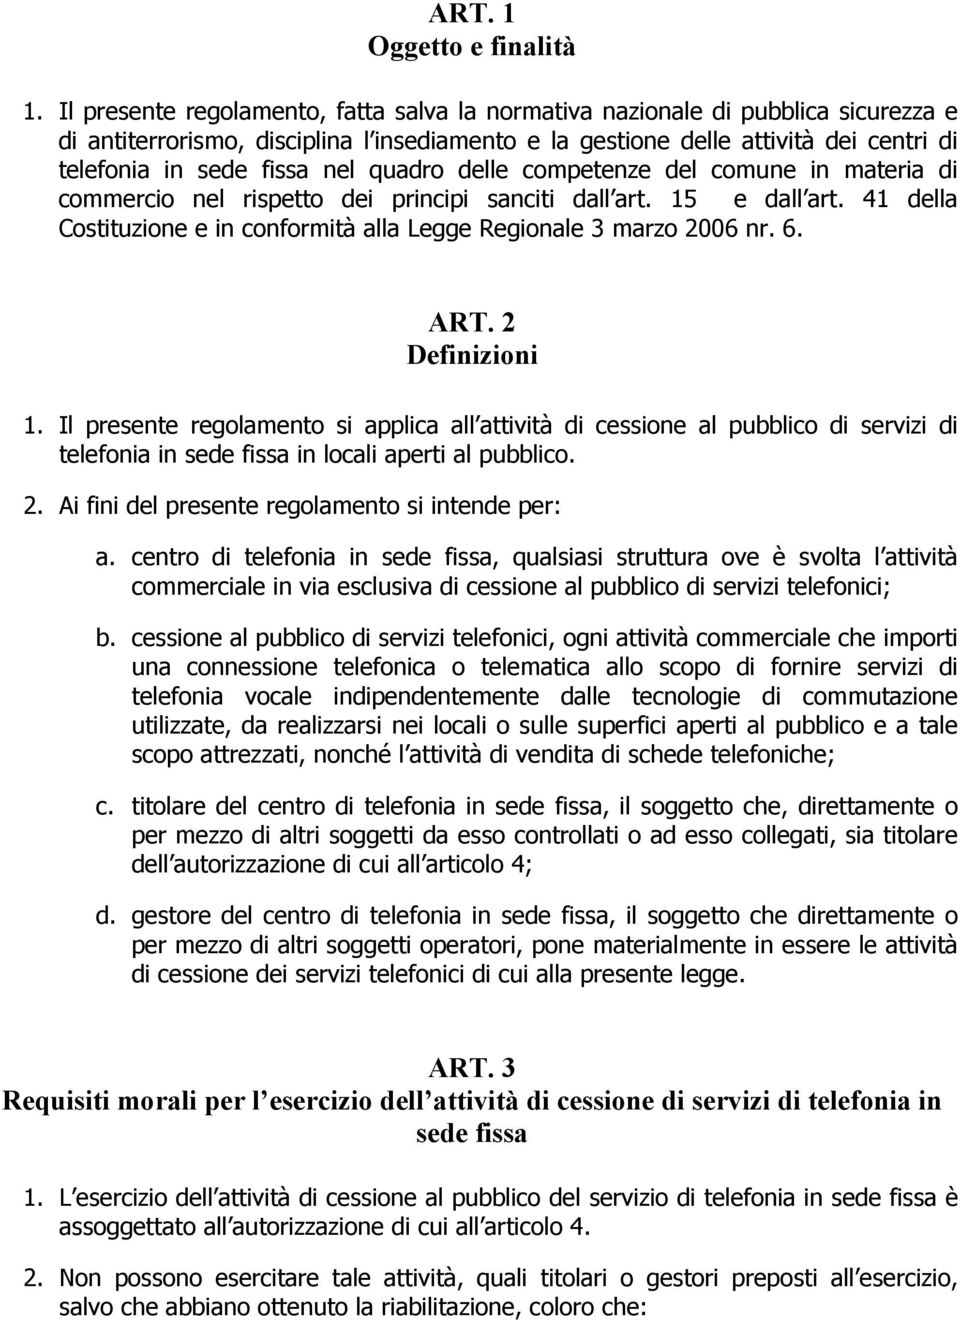 quadro delle competenze del comune in materia di commercio nel rispetto dei principi sanciti dall art. 15 e dall art. 41 della Costituzione e in conformità alla Legge Regionale 3 marzo 2006 nr. 6.